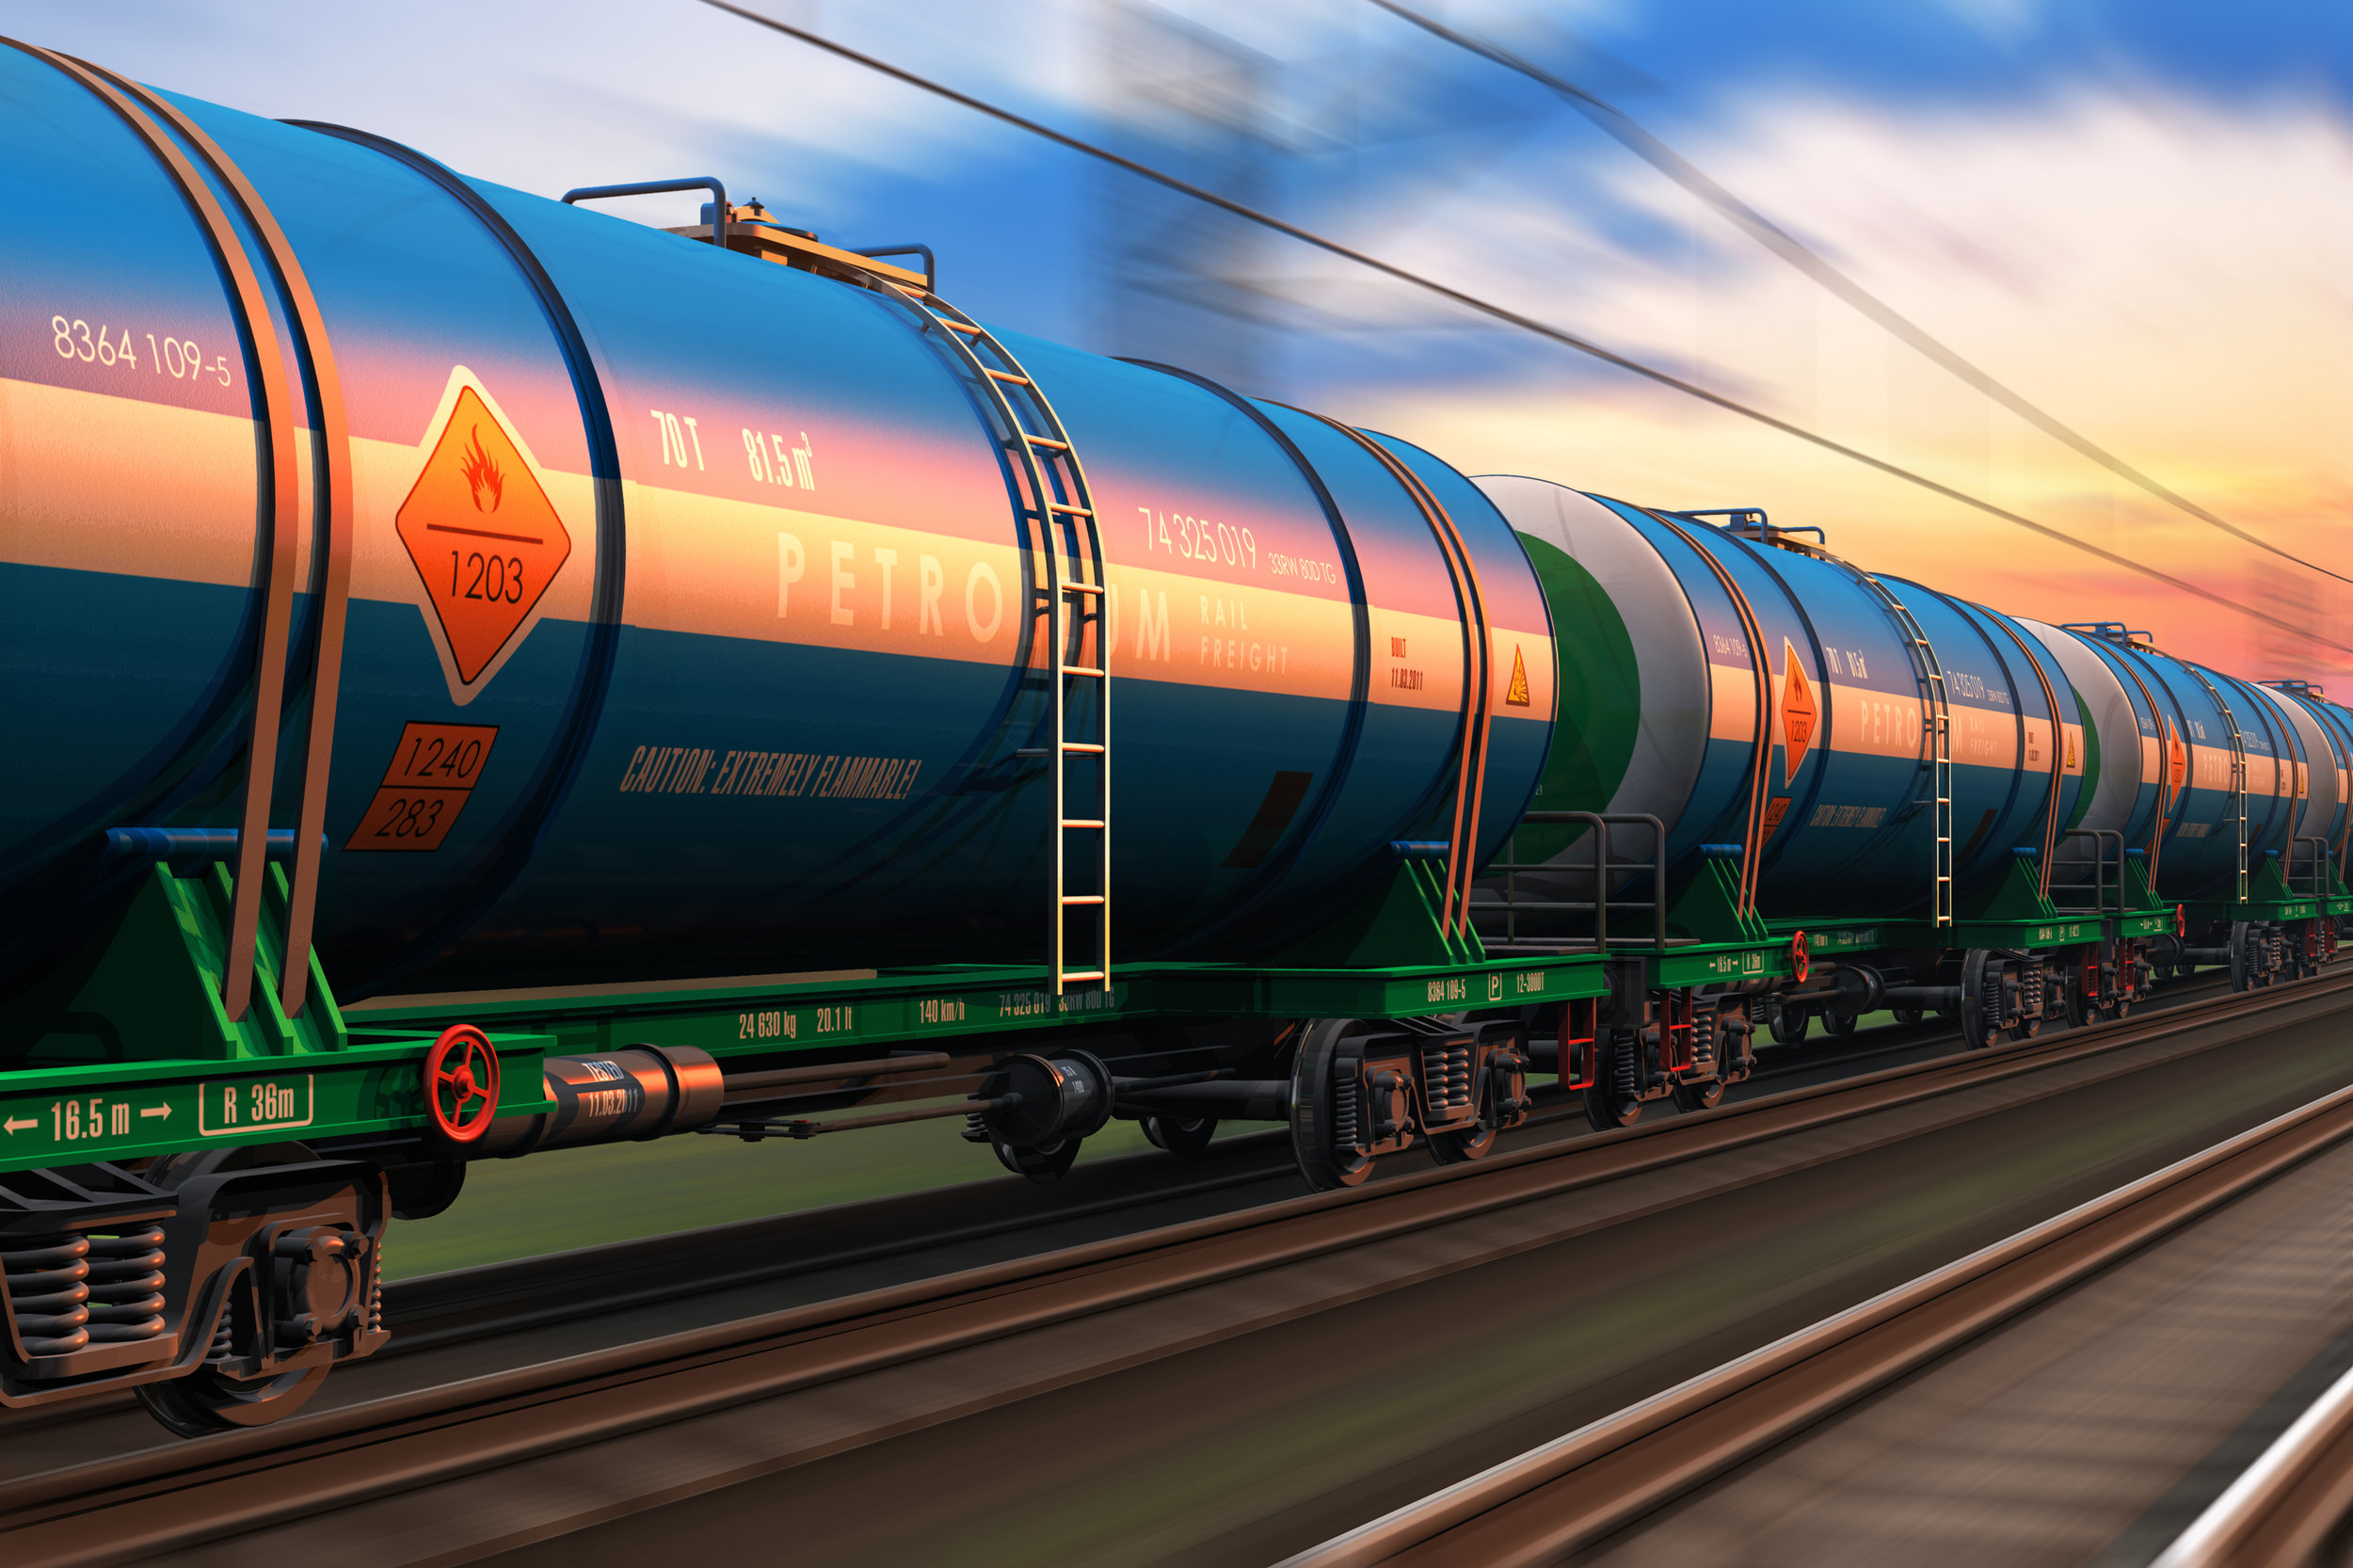 Freight-train-wtih-petroleum-tankcars-498791427_3867x2578 (1).jpeg